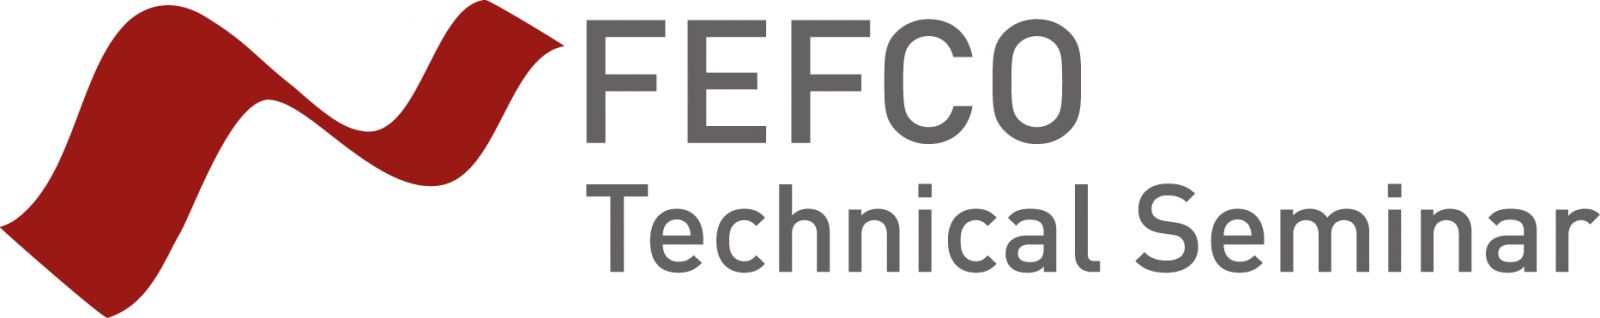 FEFCO Technical Seminar 2021